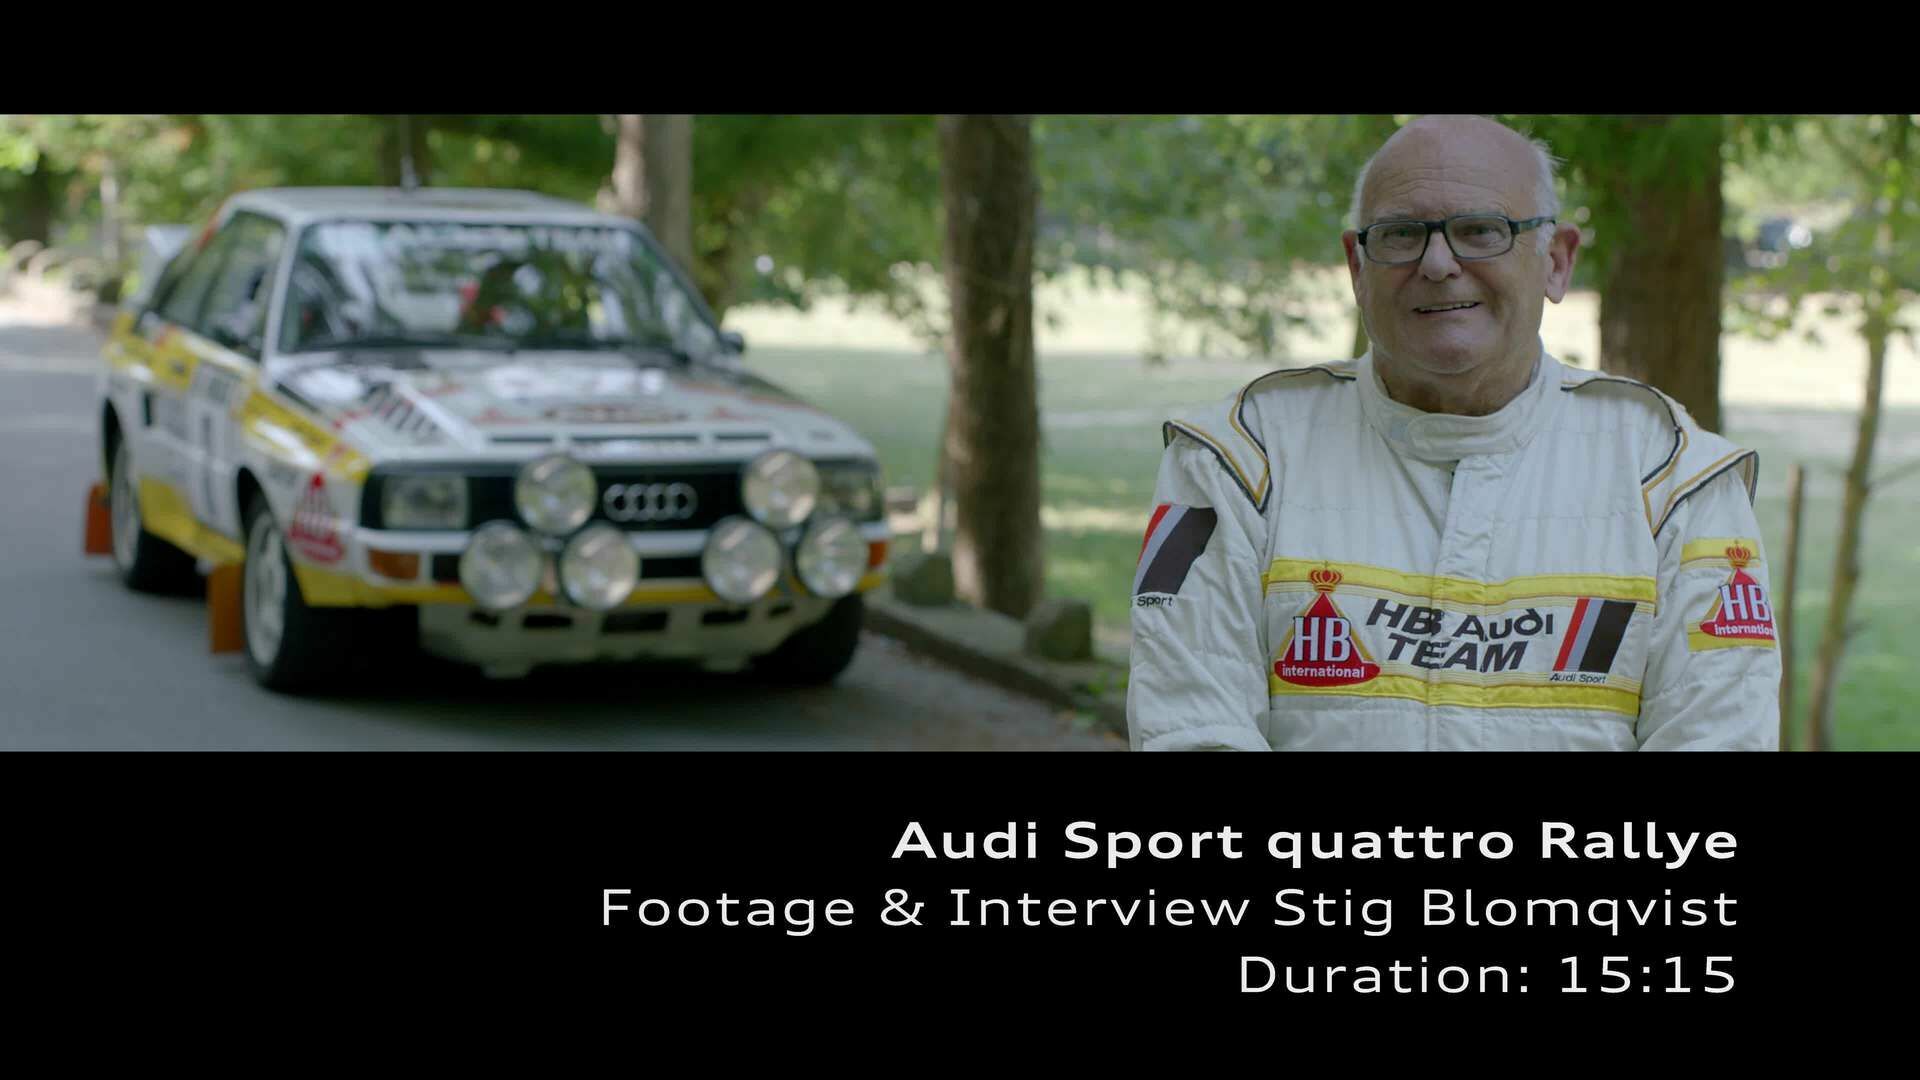 Footage: Audi Sport quattro Rallye und Stig Blomqvist